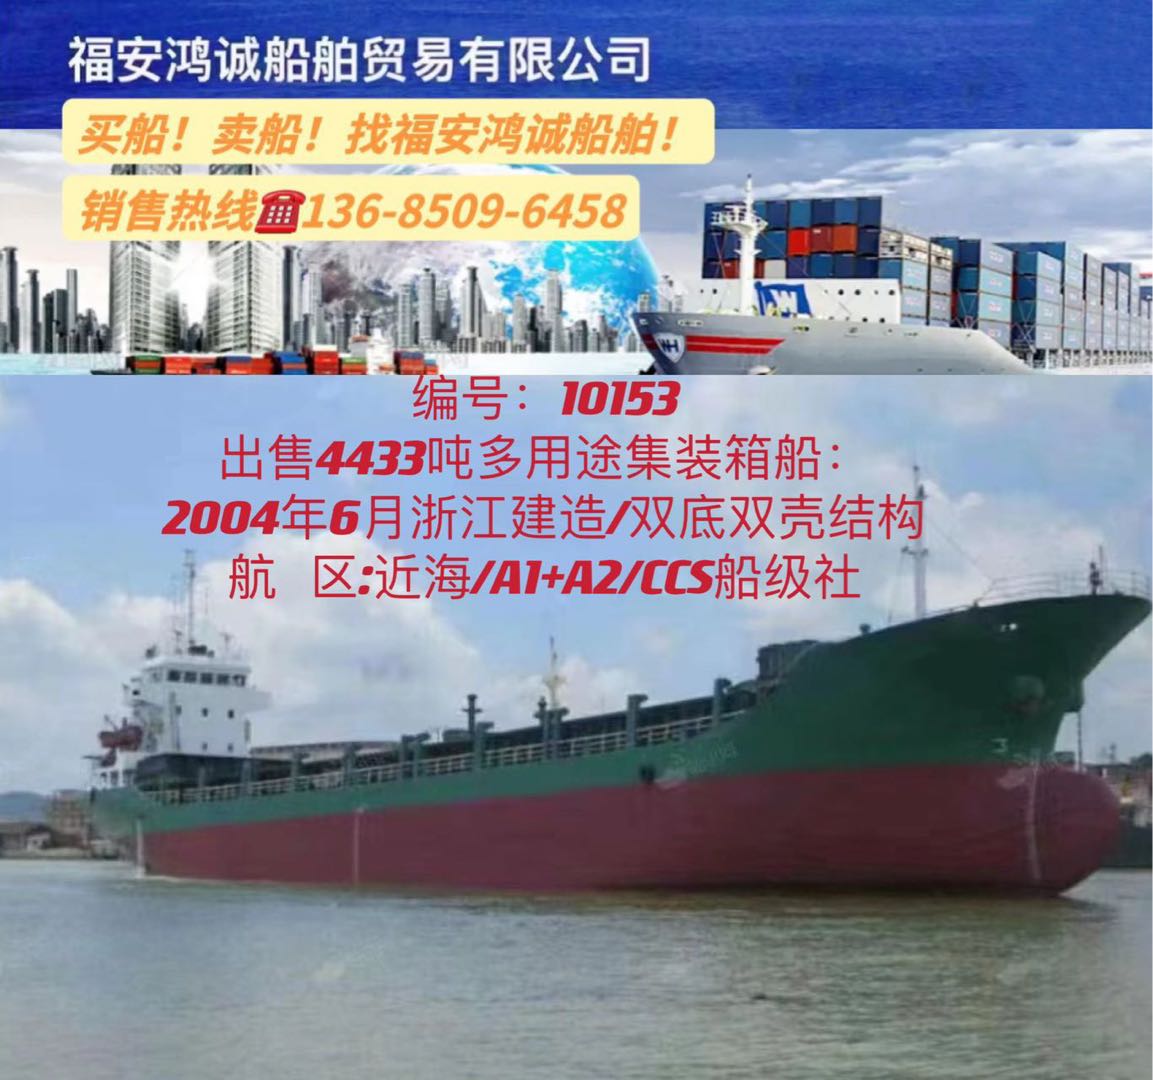 出售04年4433吨集装箱多用途船